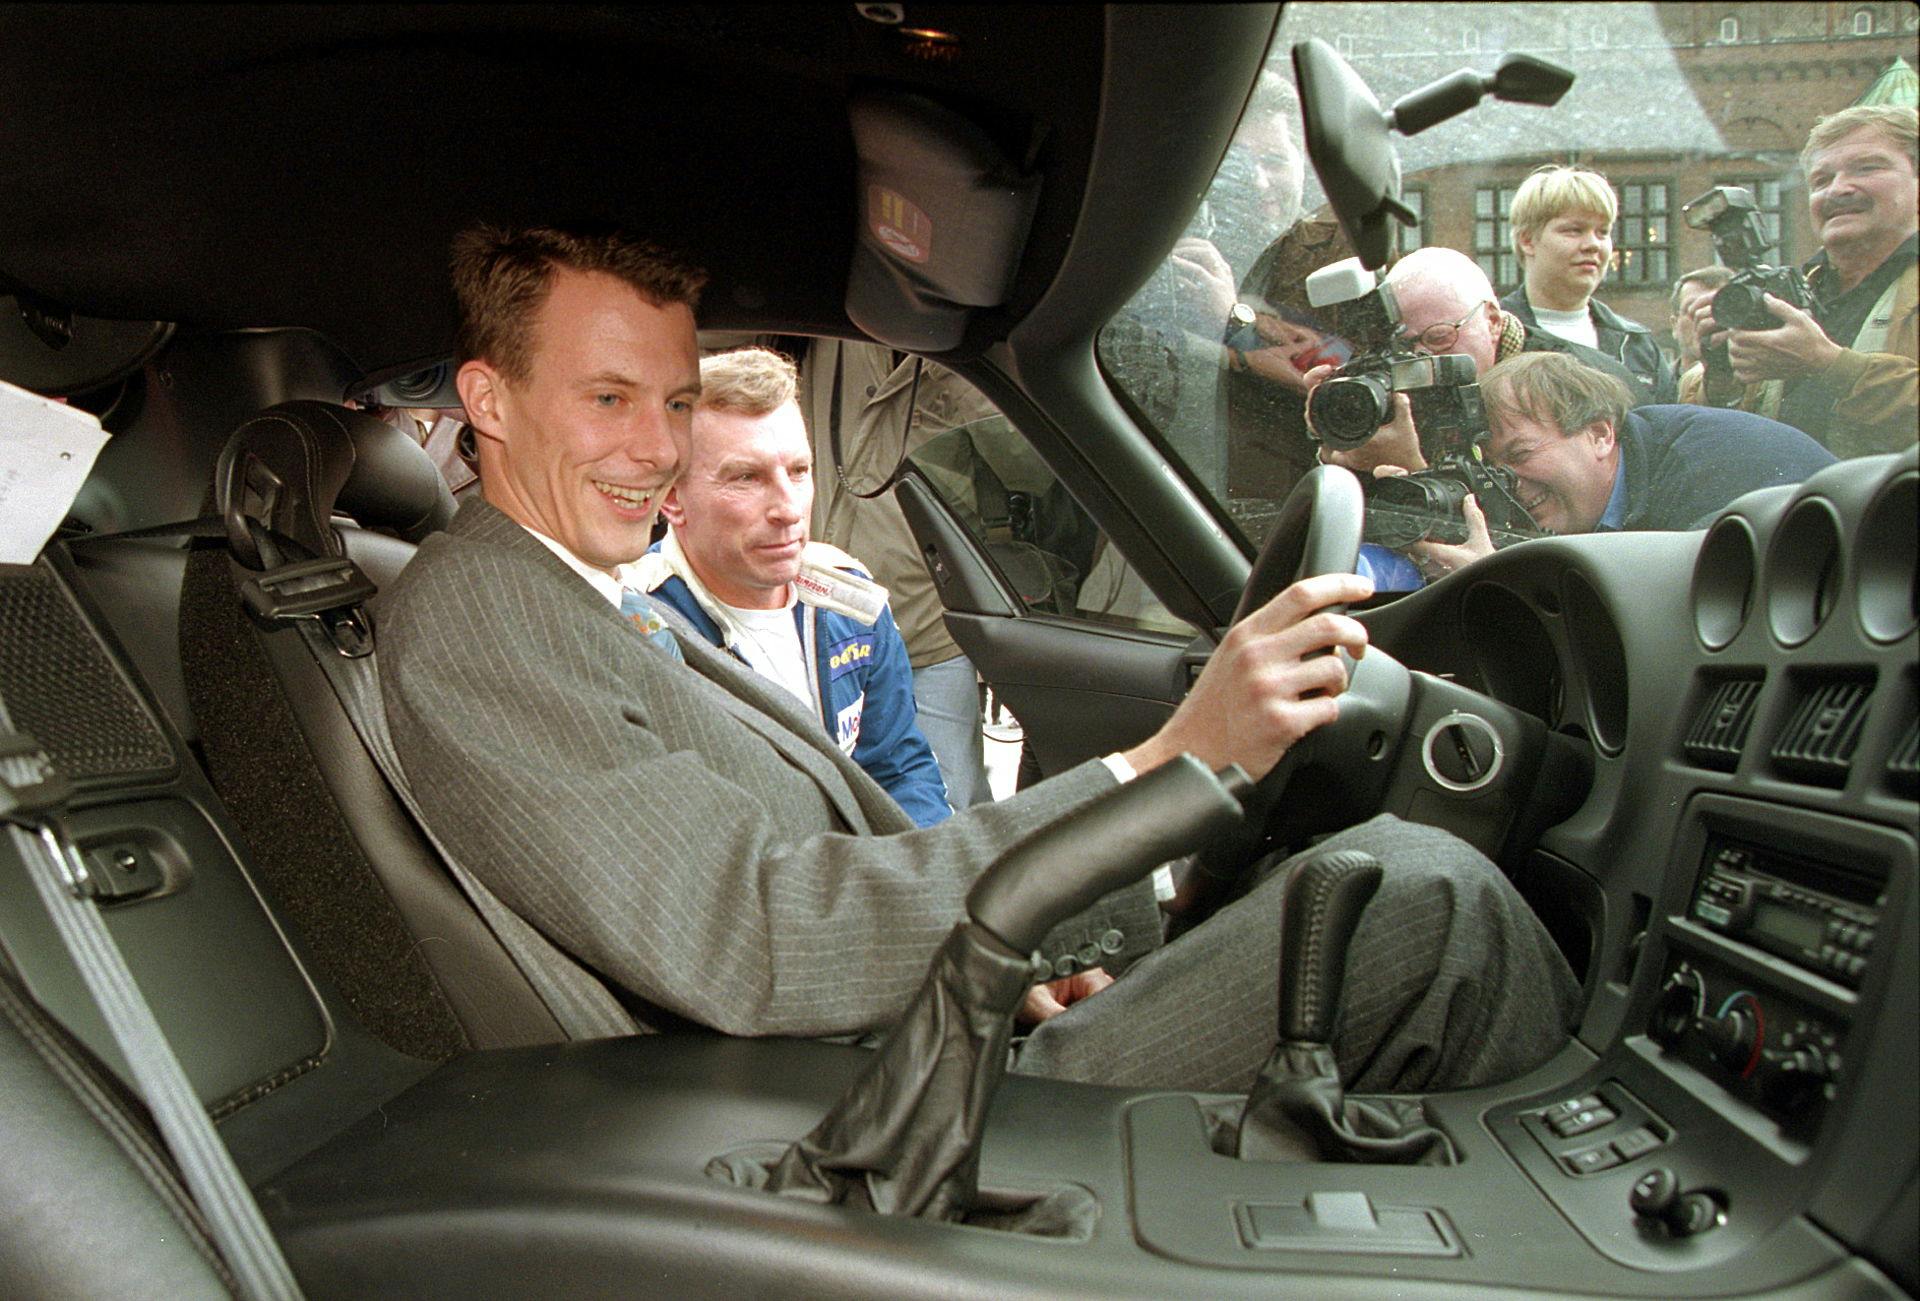 Her ses Thorkild Thyrring tilbage i 1998 sammen med prins Joachim. De to deler interessen for benzin og hurtige biler.